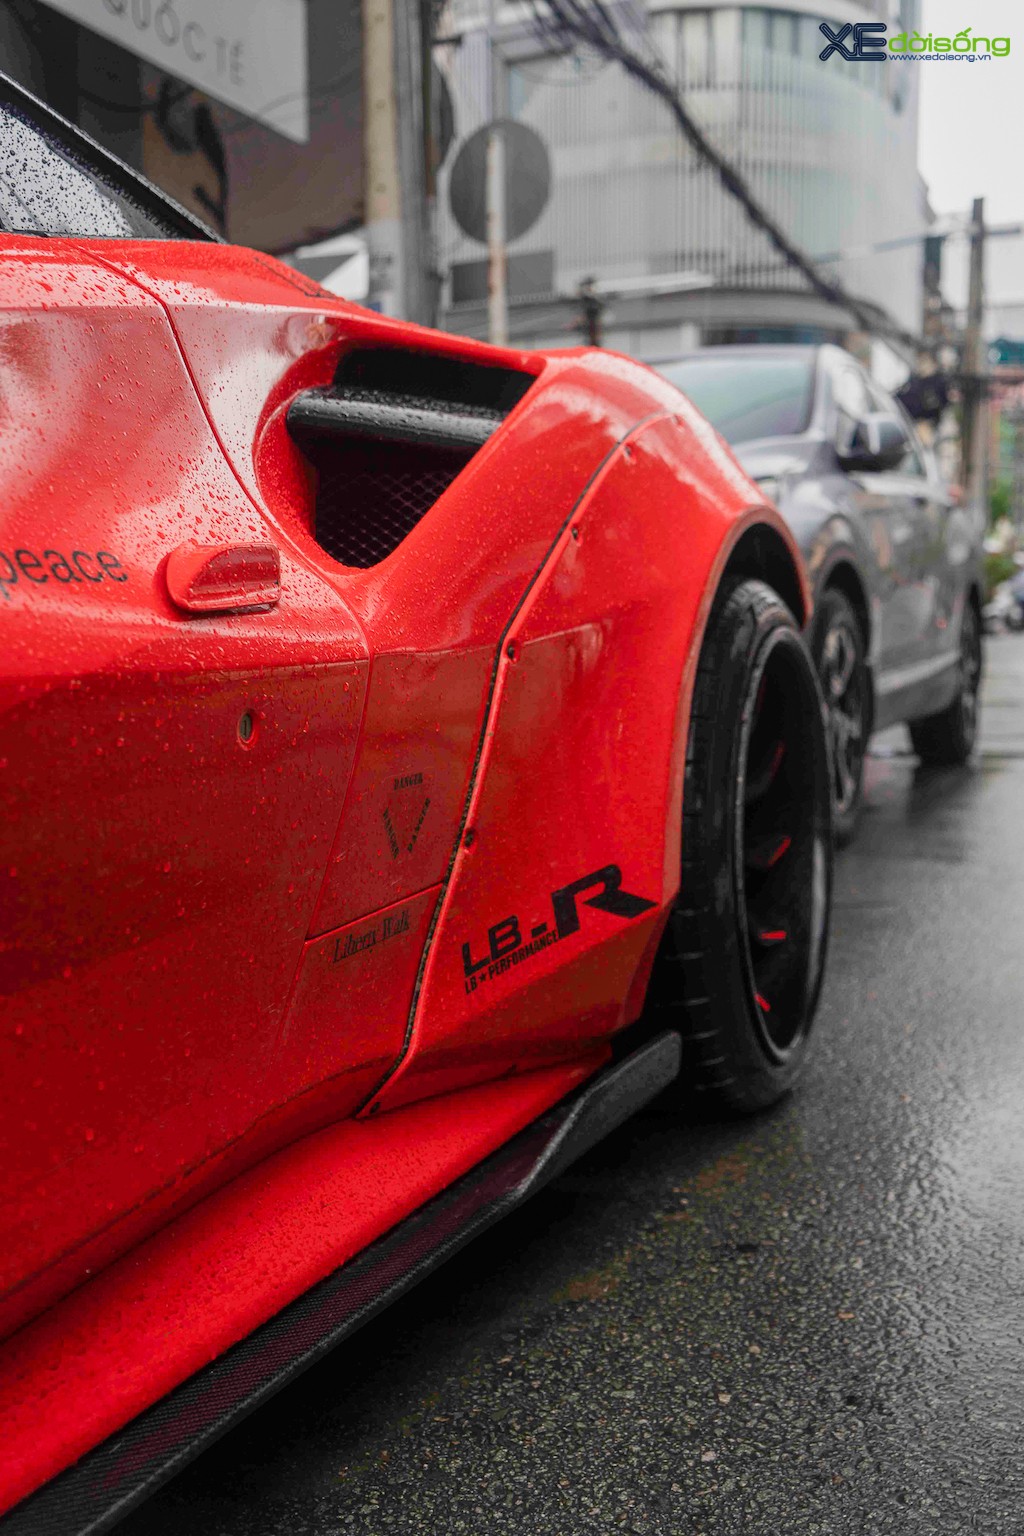 “Làm dâu” Sài Gòn chưa đầy 1 tháng, Ferrari 488 GTB độ LIberty Walk độc nhất Việt Nam đổi màu như “thay áo“ ảnh 10